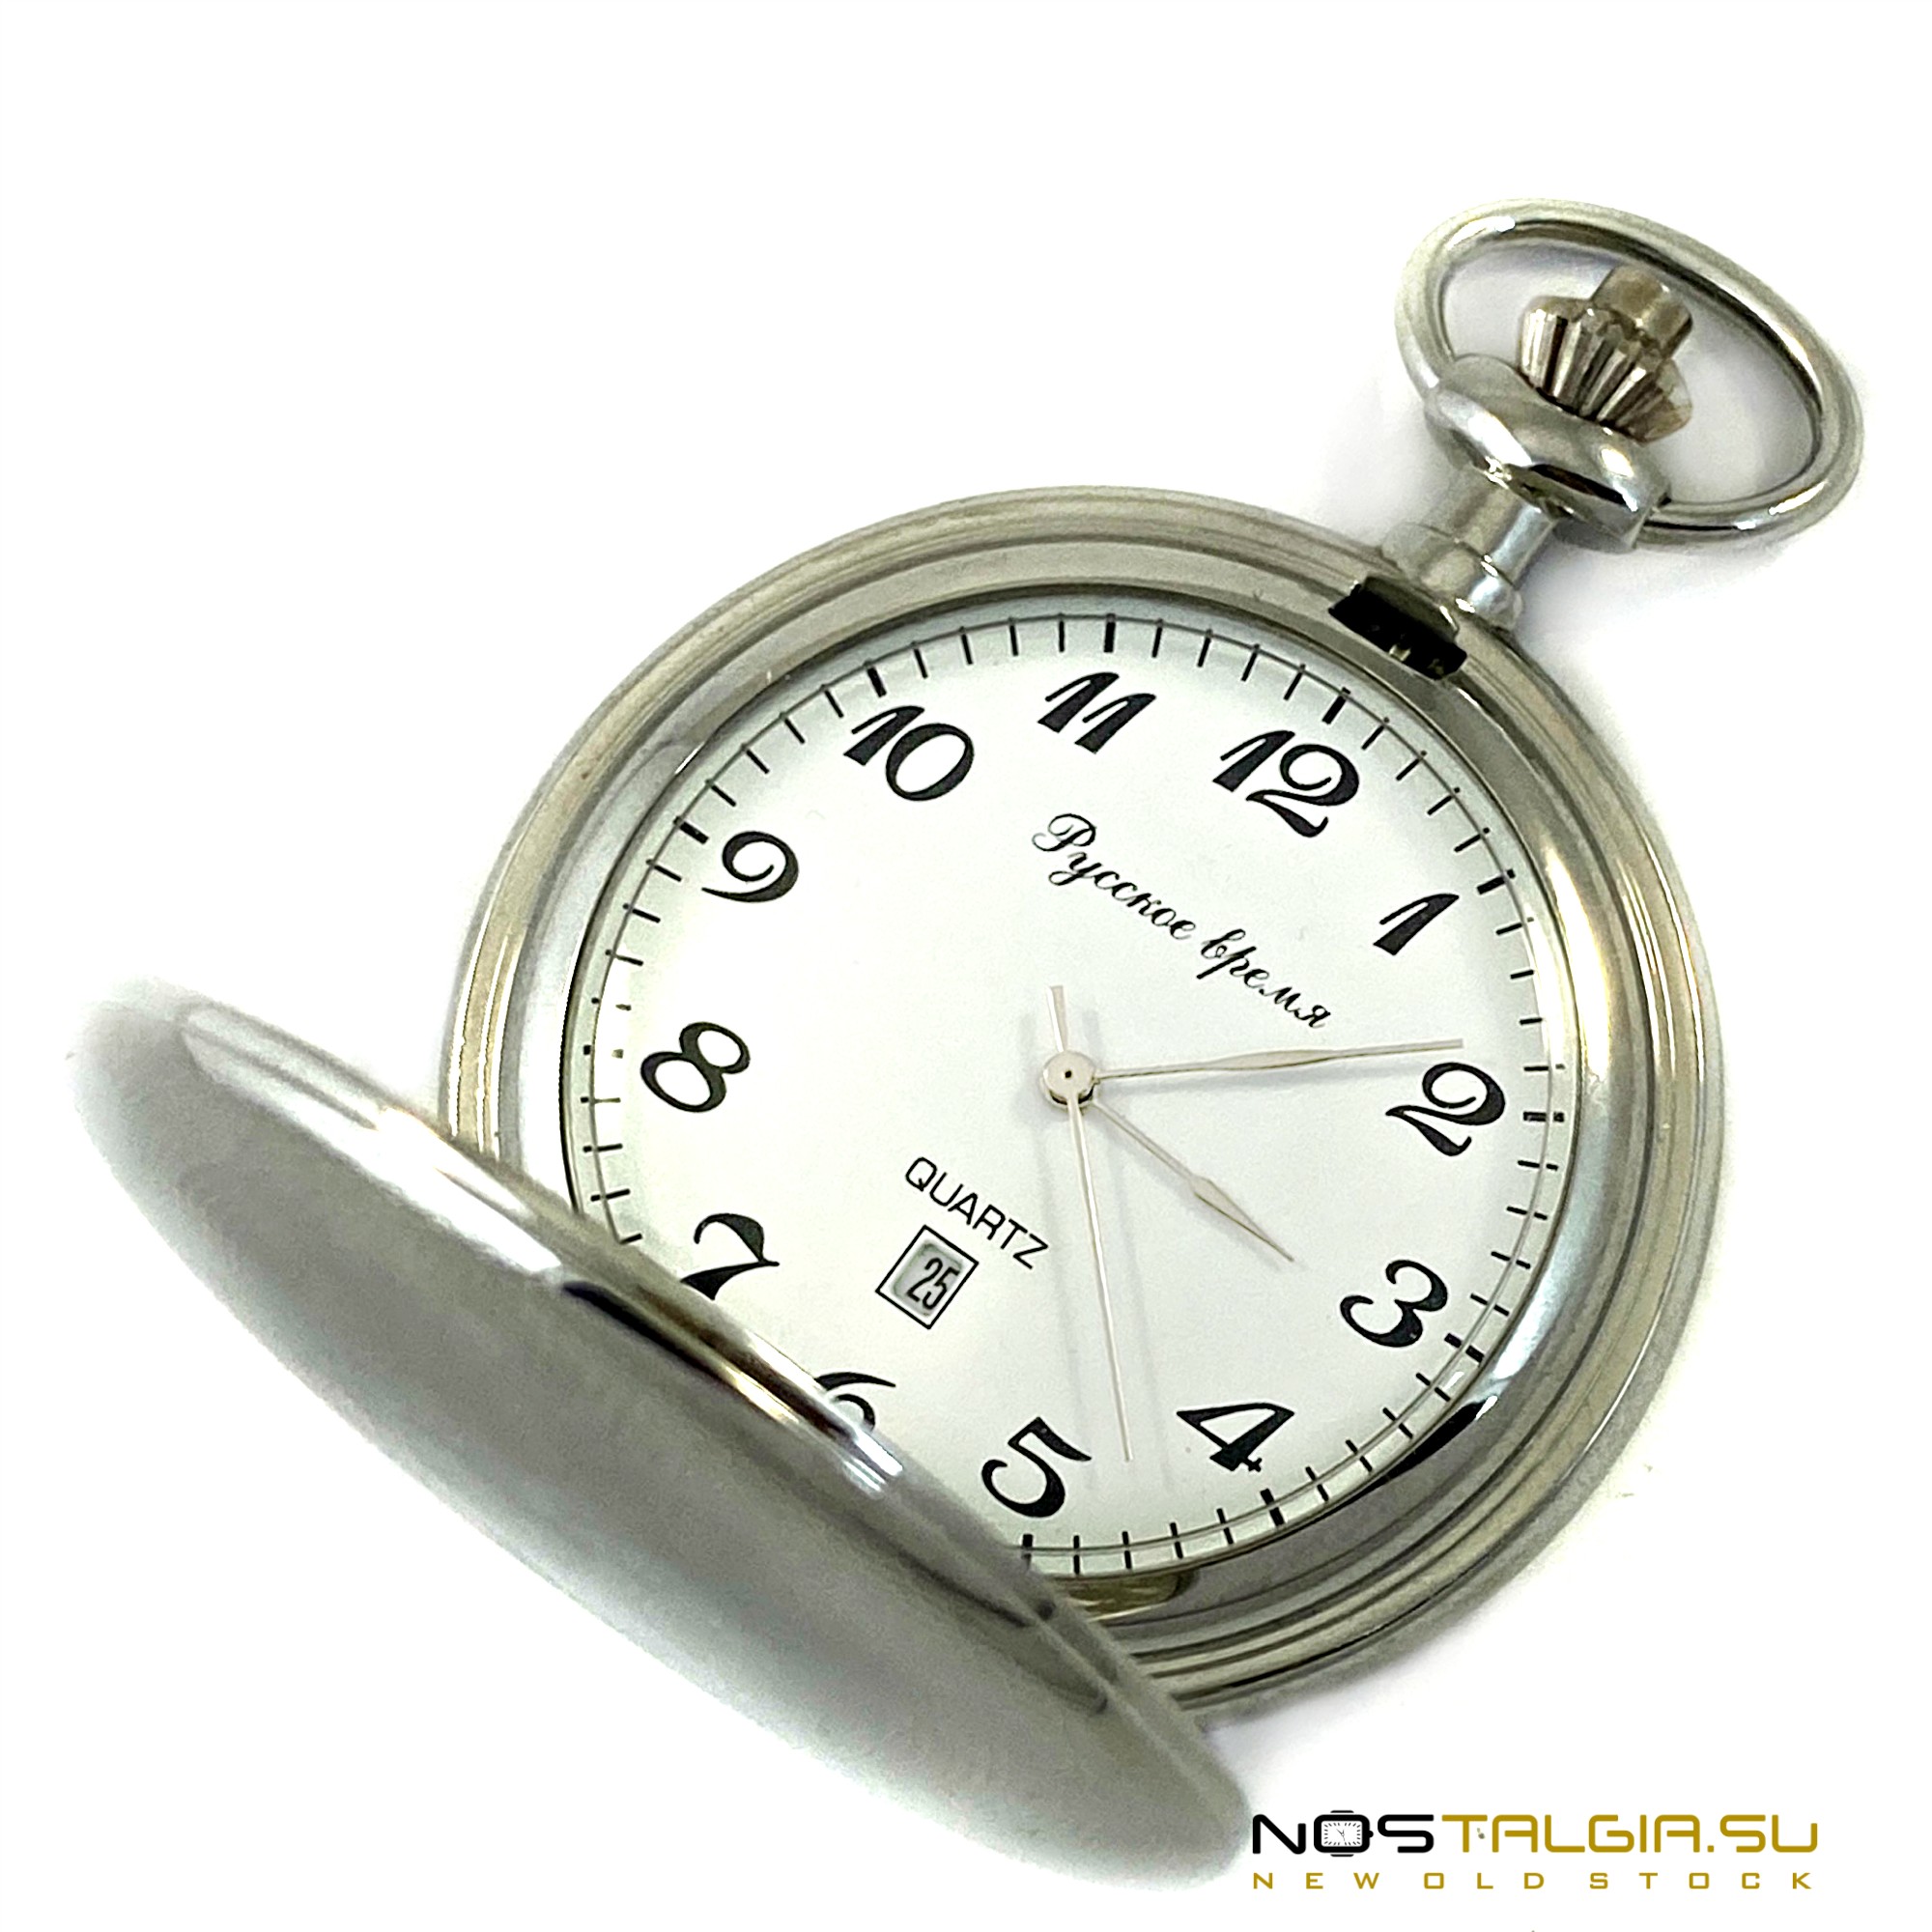 Часы карманные "Полет" Русское время, в оригинальной красивой упаковке, новые